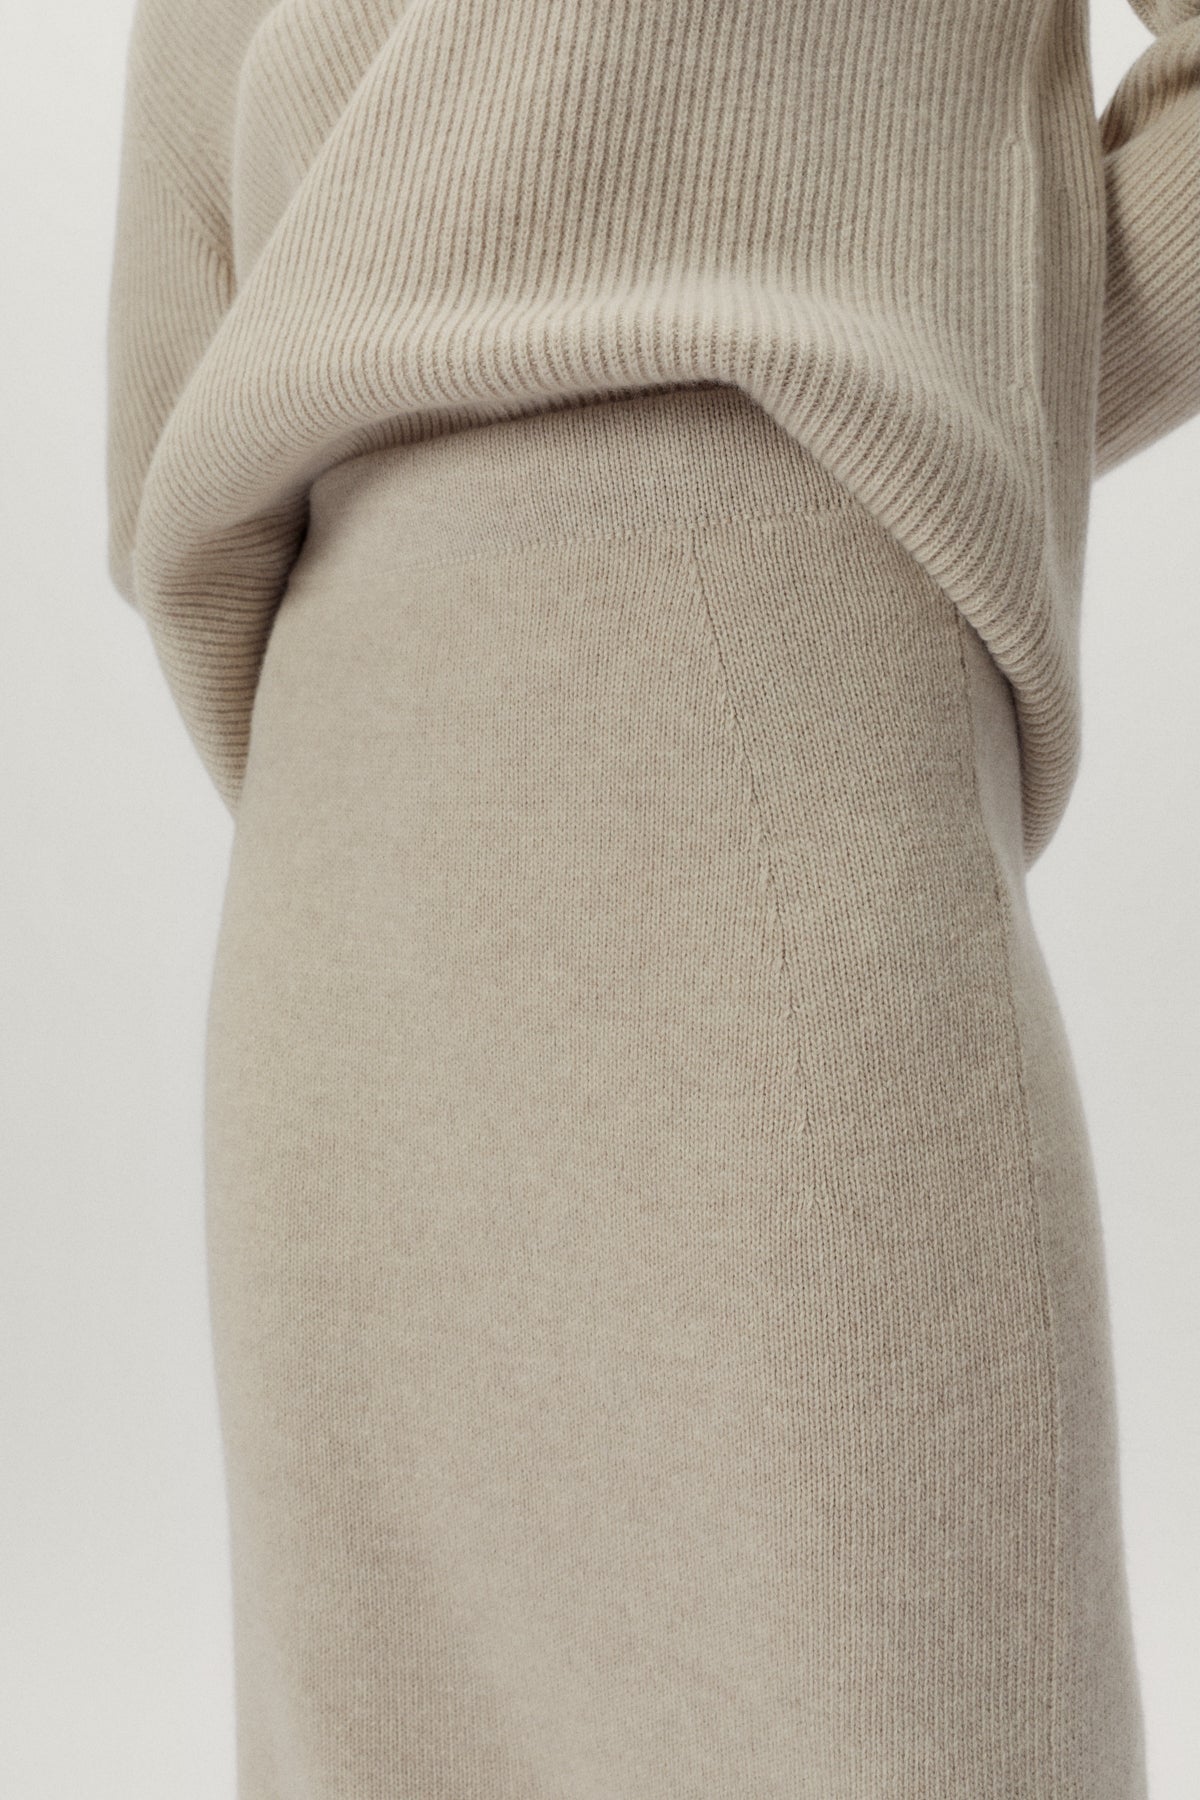 Ecru | The Woolen Pencil Skirt